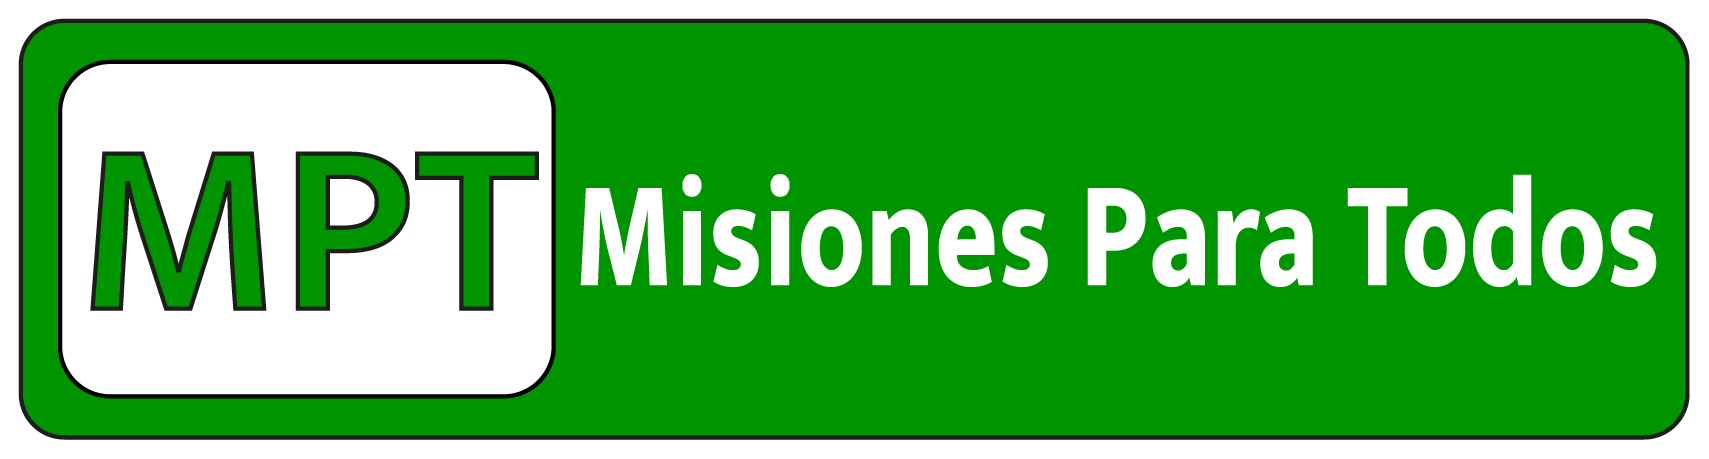 Misiones Para Todos